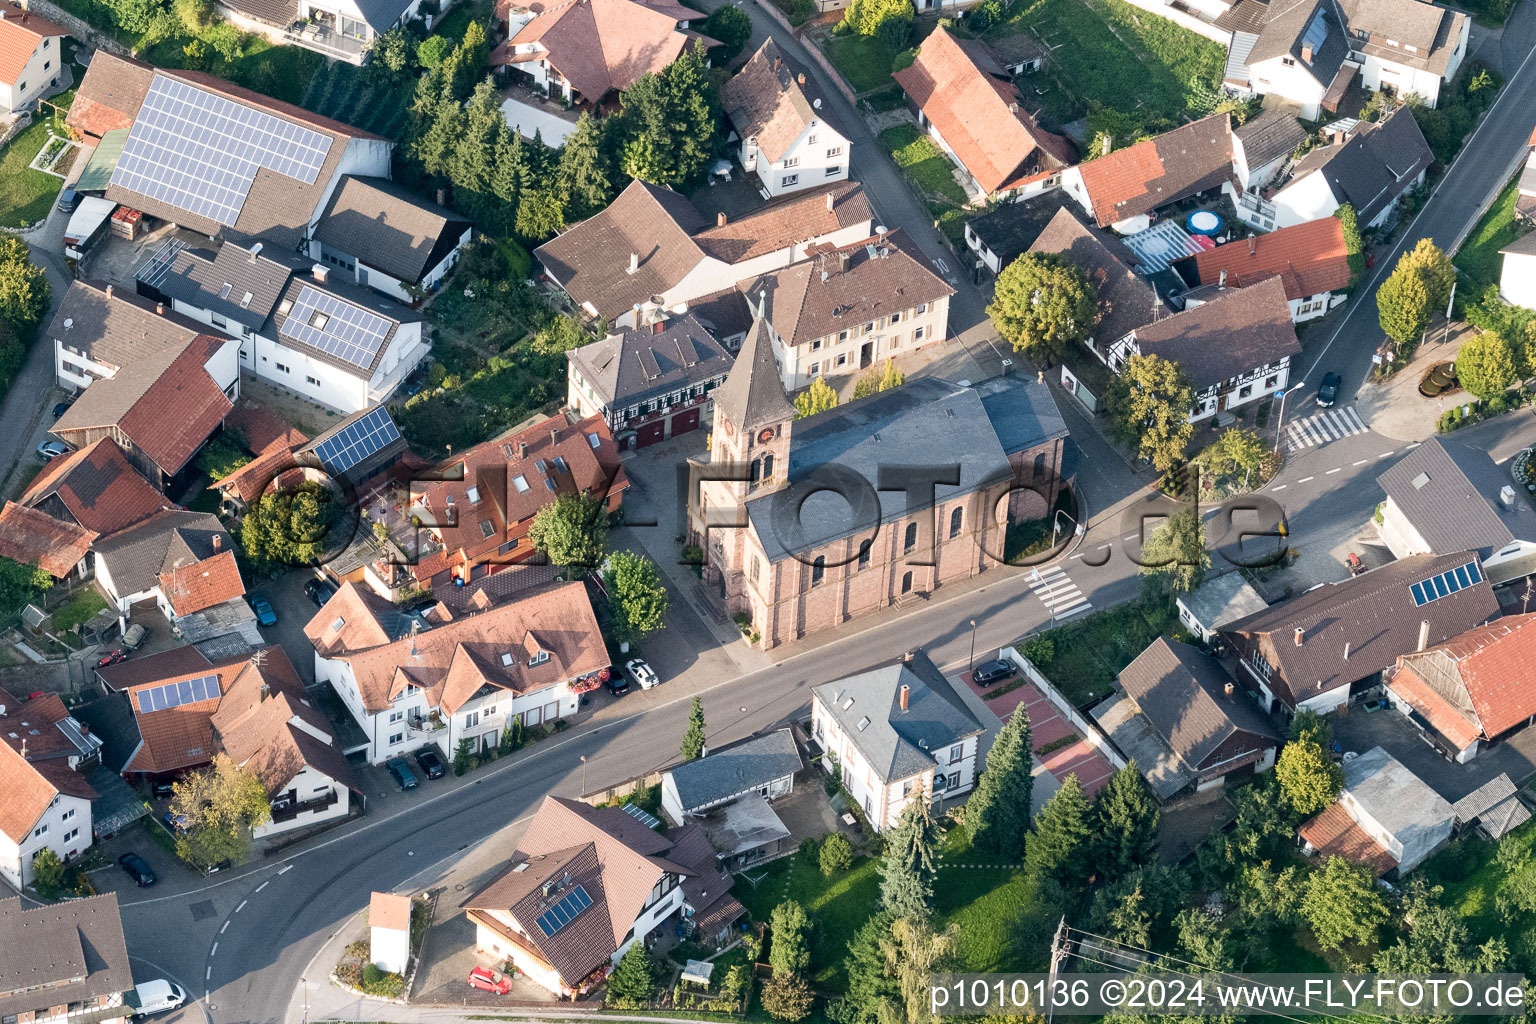 Vue aérienne de Bâtiment de l'église Saint-Wendelin à le quartier Stadelhofen in Oberkirch dans le département Bade-Wurtemberg, Allemagne